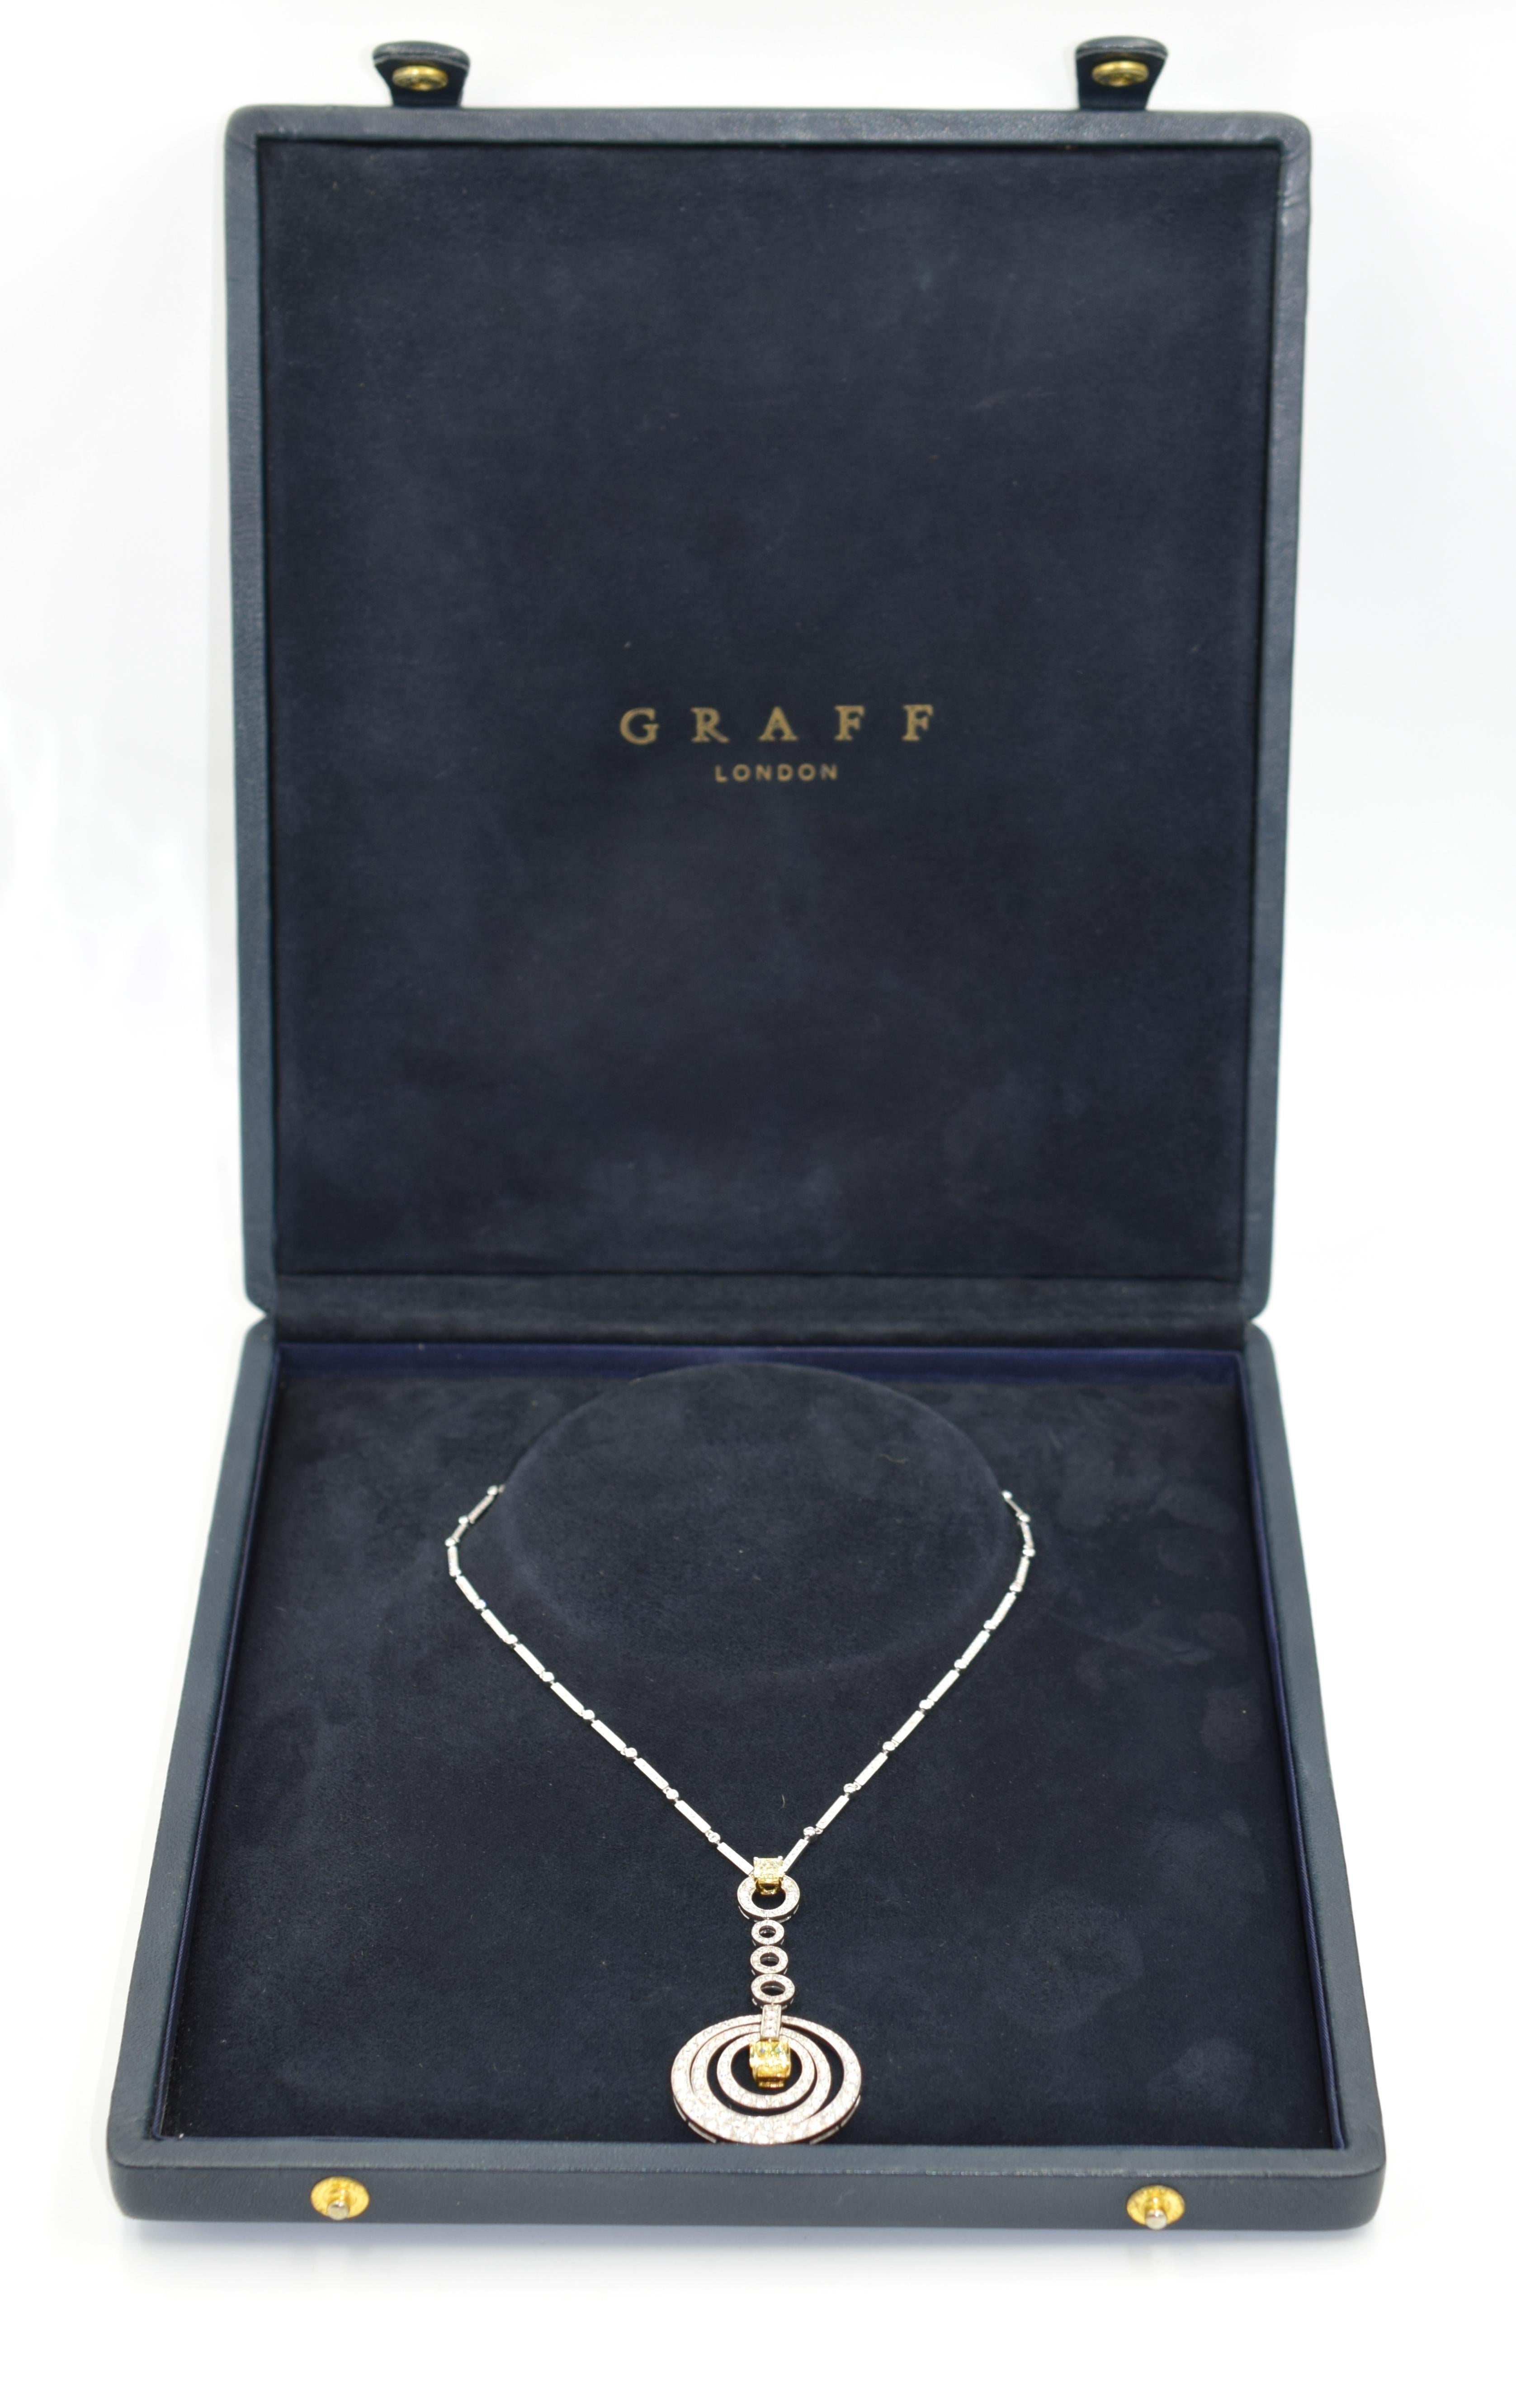 graff necklace box